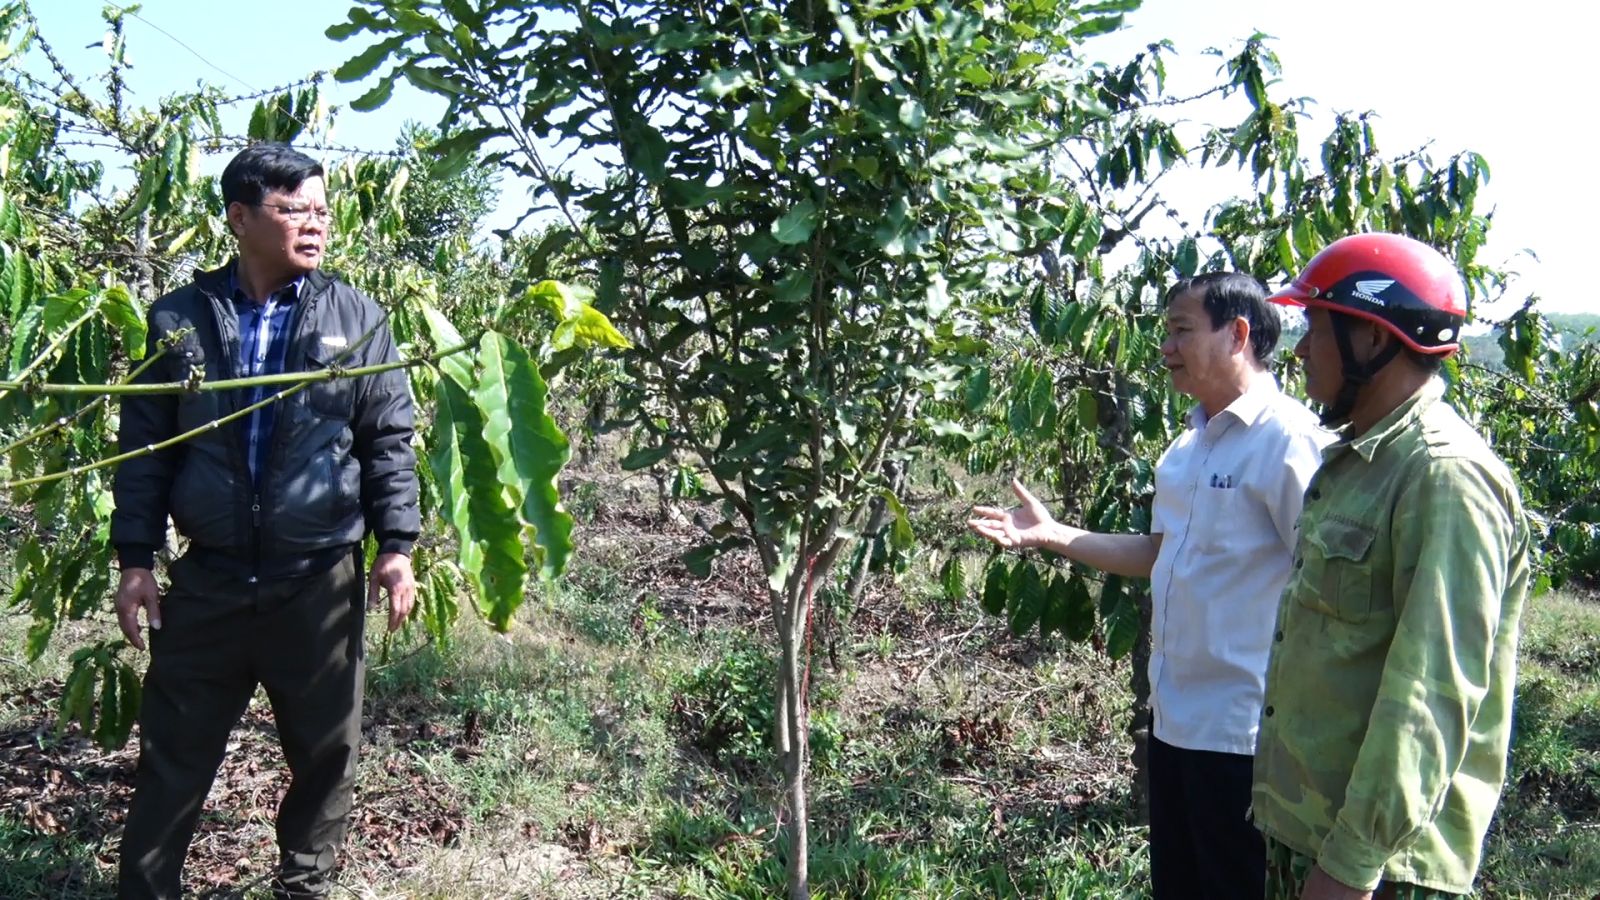 Loại cây cho hạt ăn bổ dưỡng, hỗ trợ giảm mỡ máu, ở huyện này của Kon Tum dân đang trồng thêm - Ảnh 2.